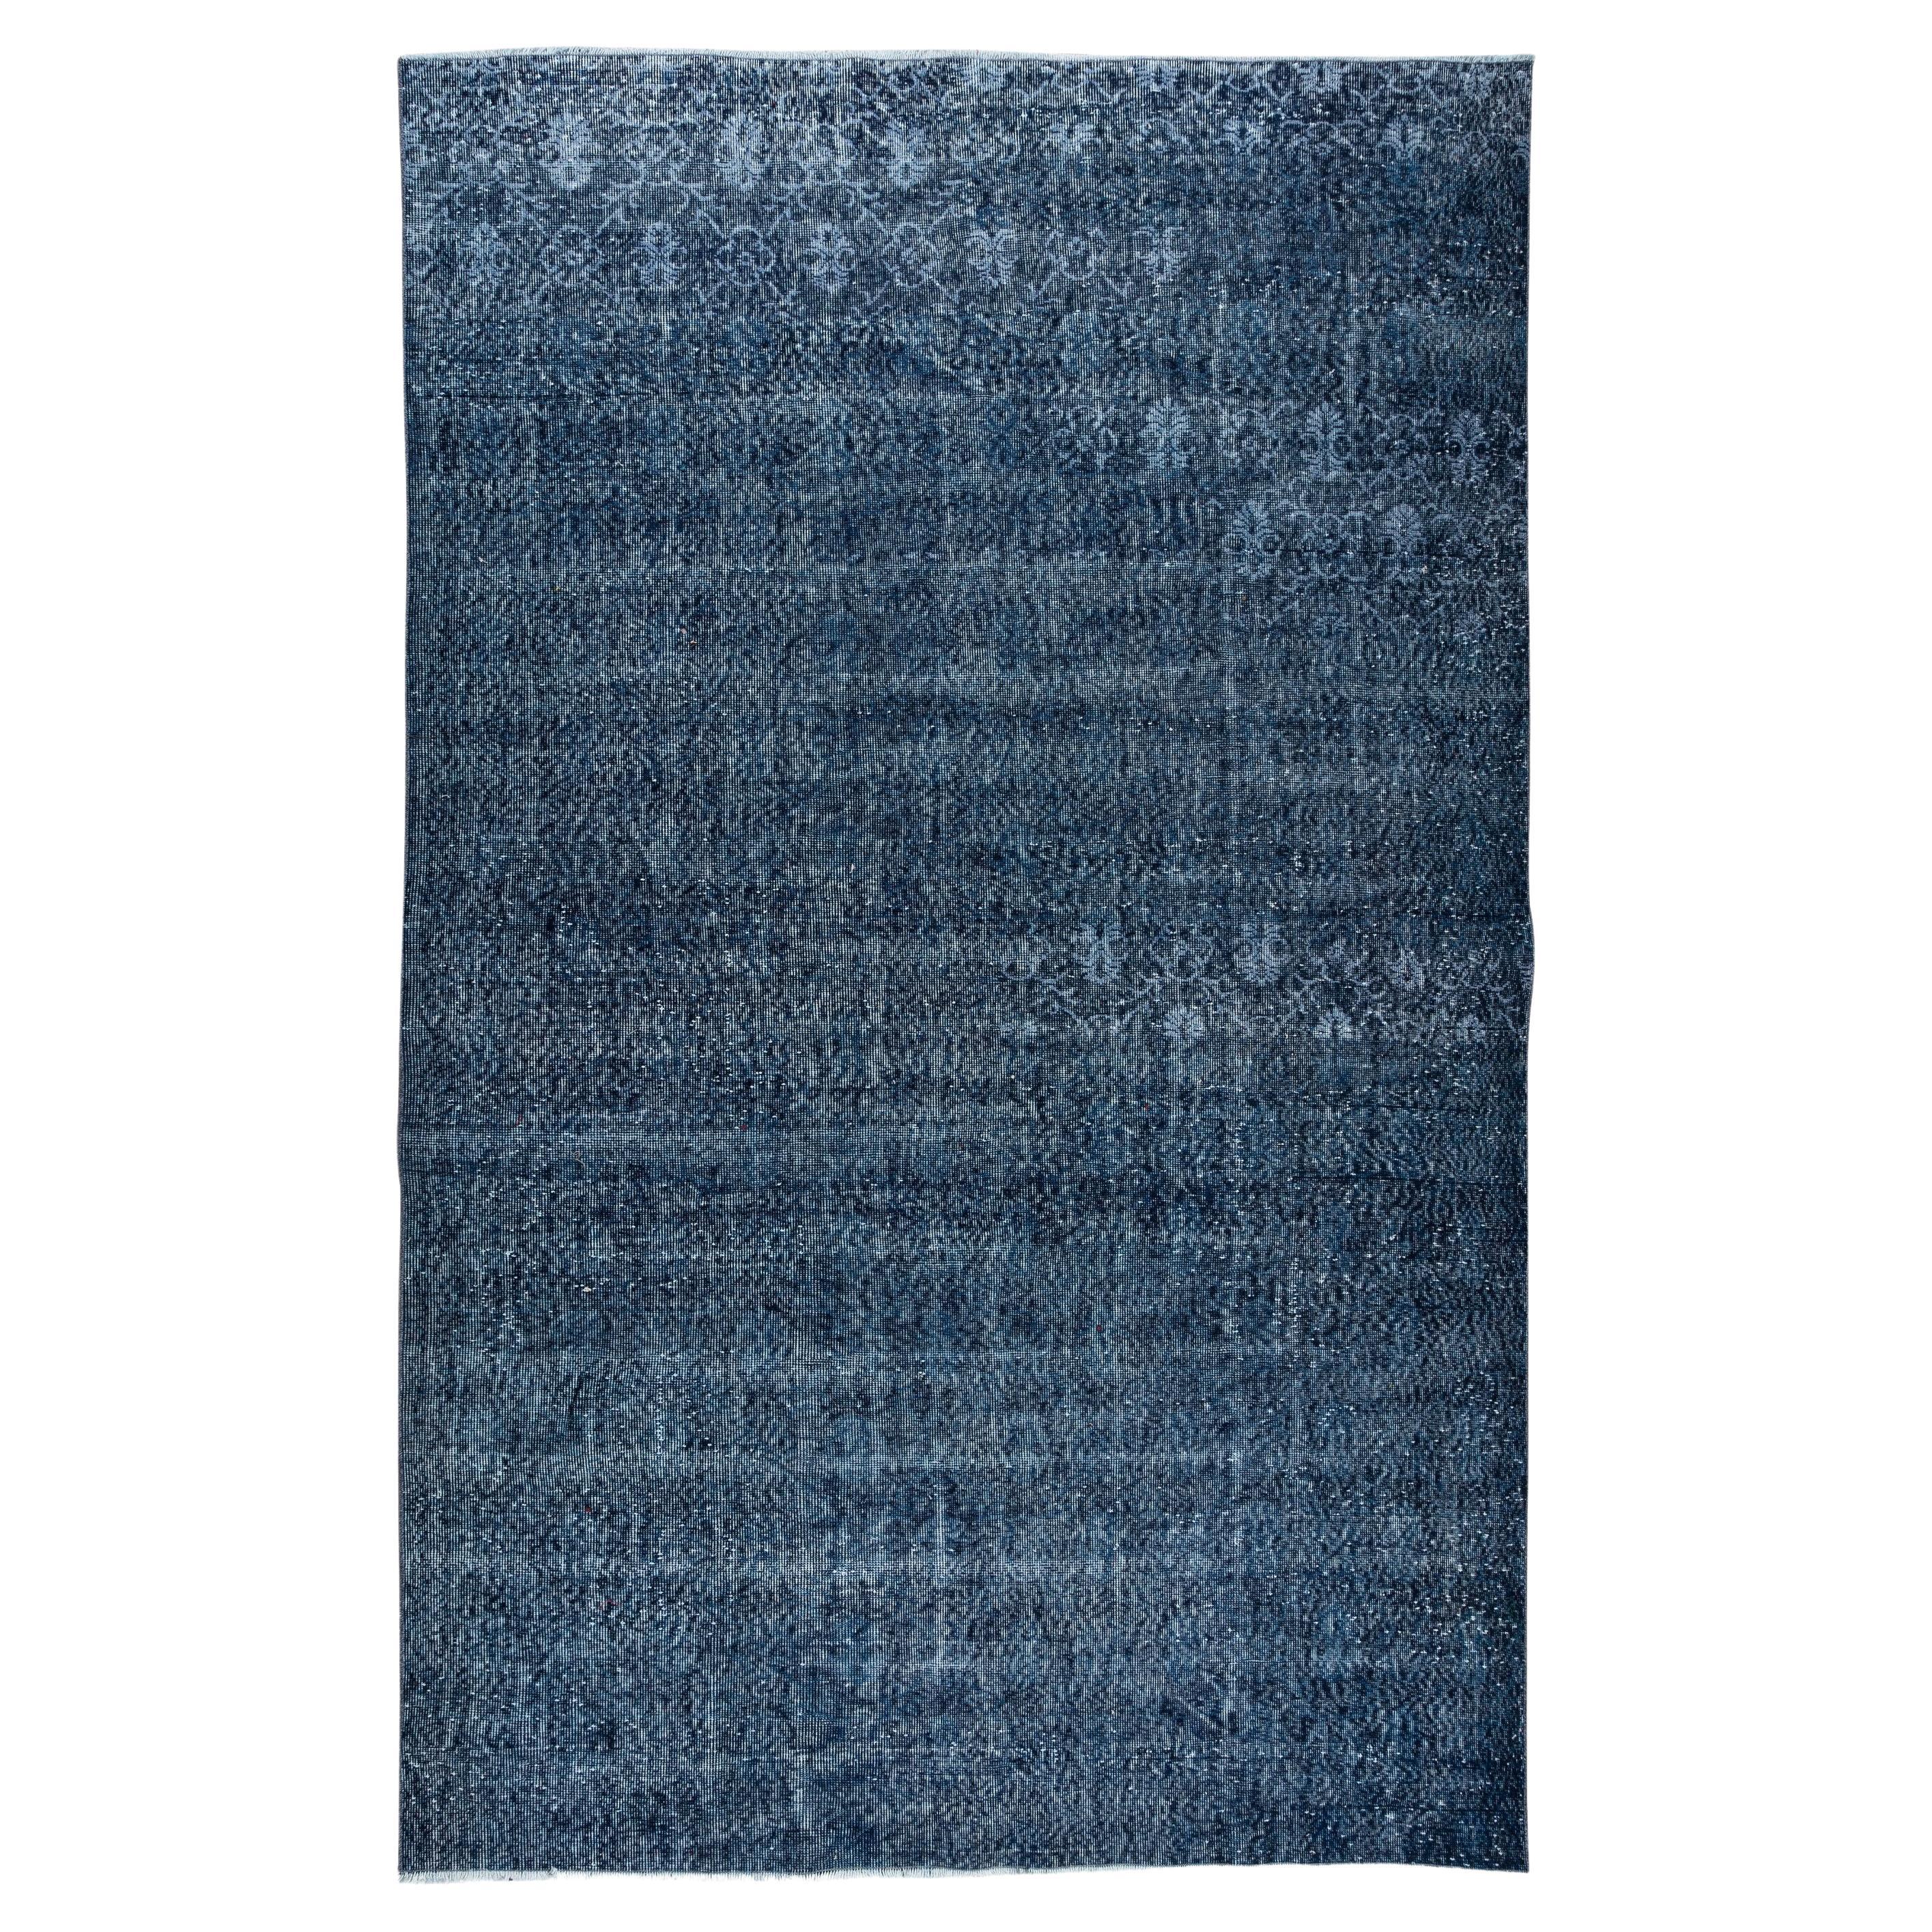 7x11 Ft Handgefertigter türkischer Vintage-Teppich in Marineblau für Moderne Inneneinrichtung